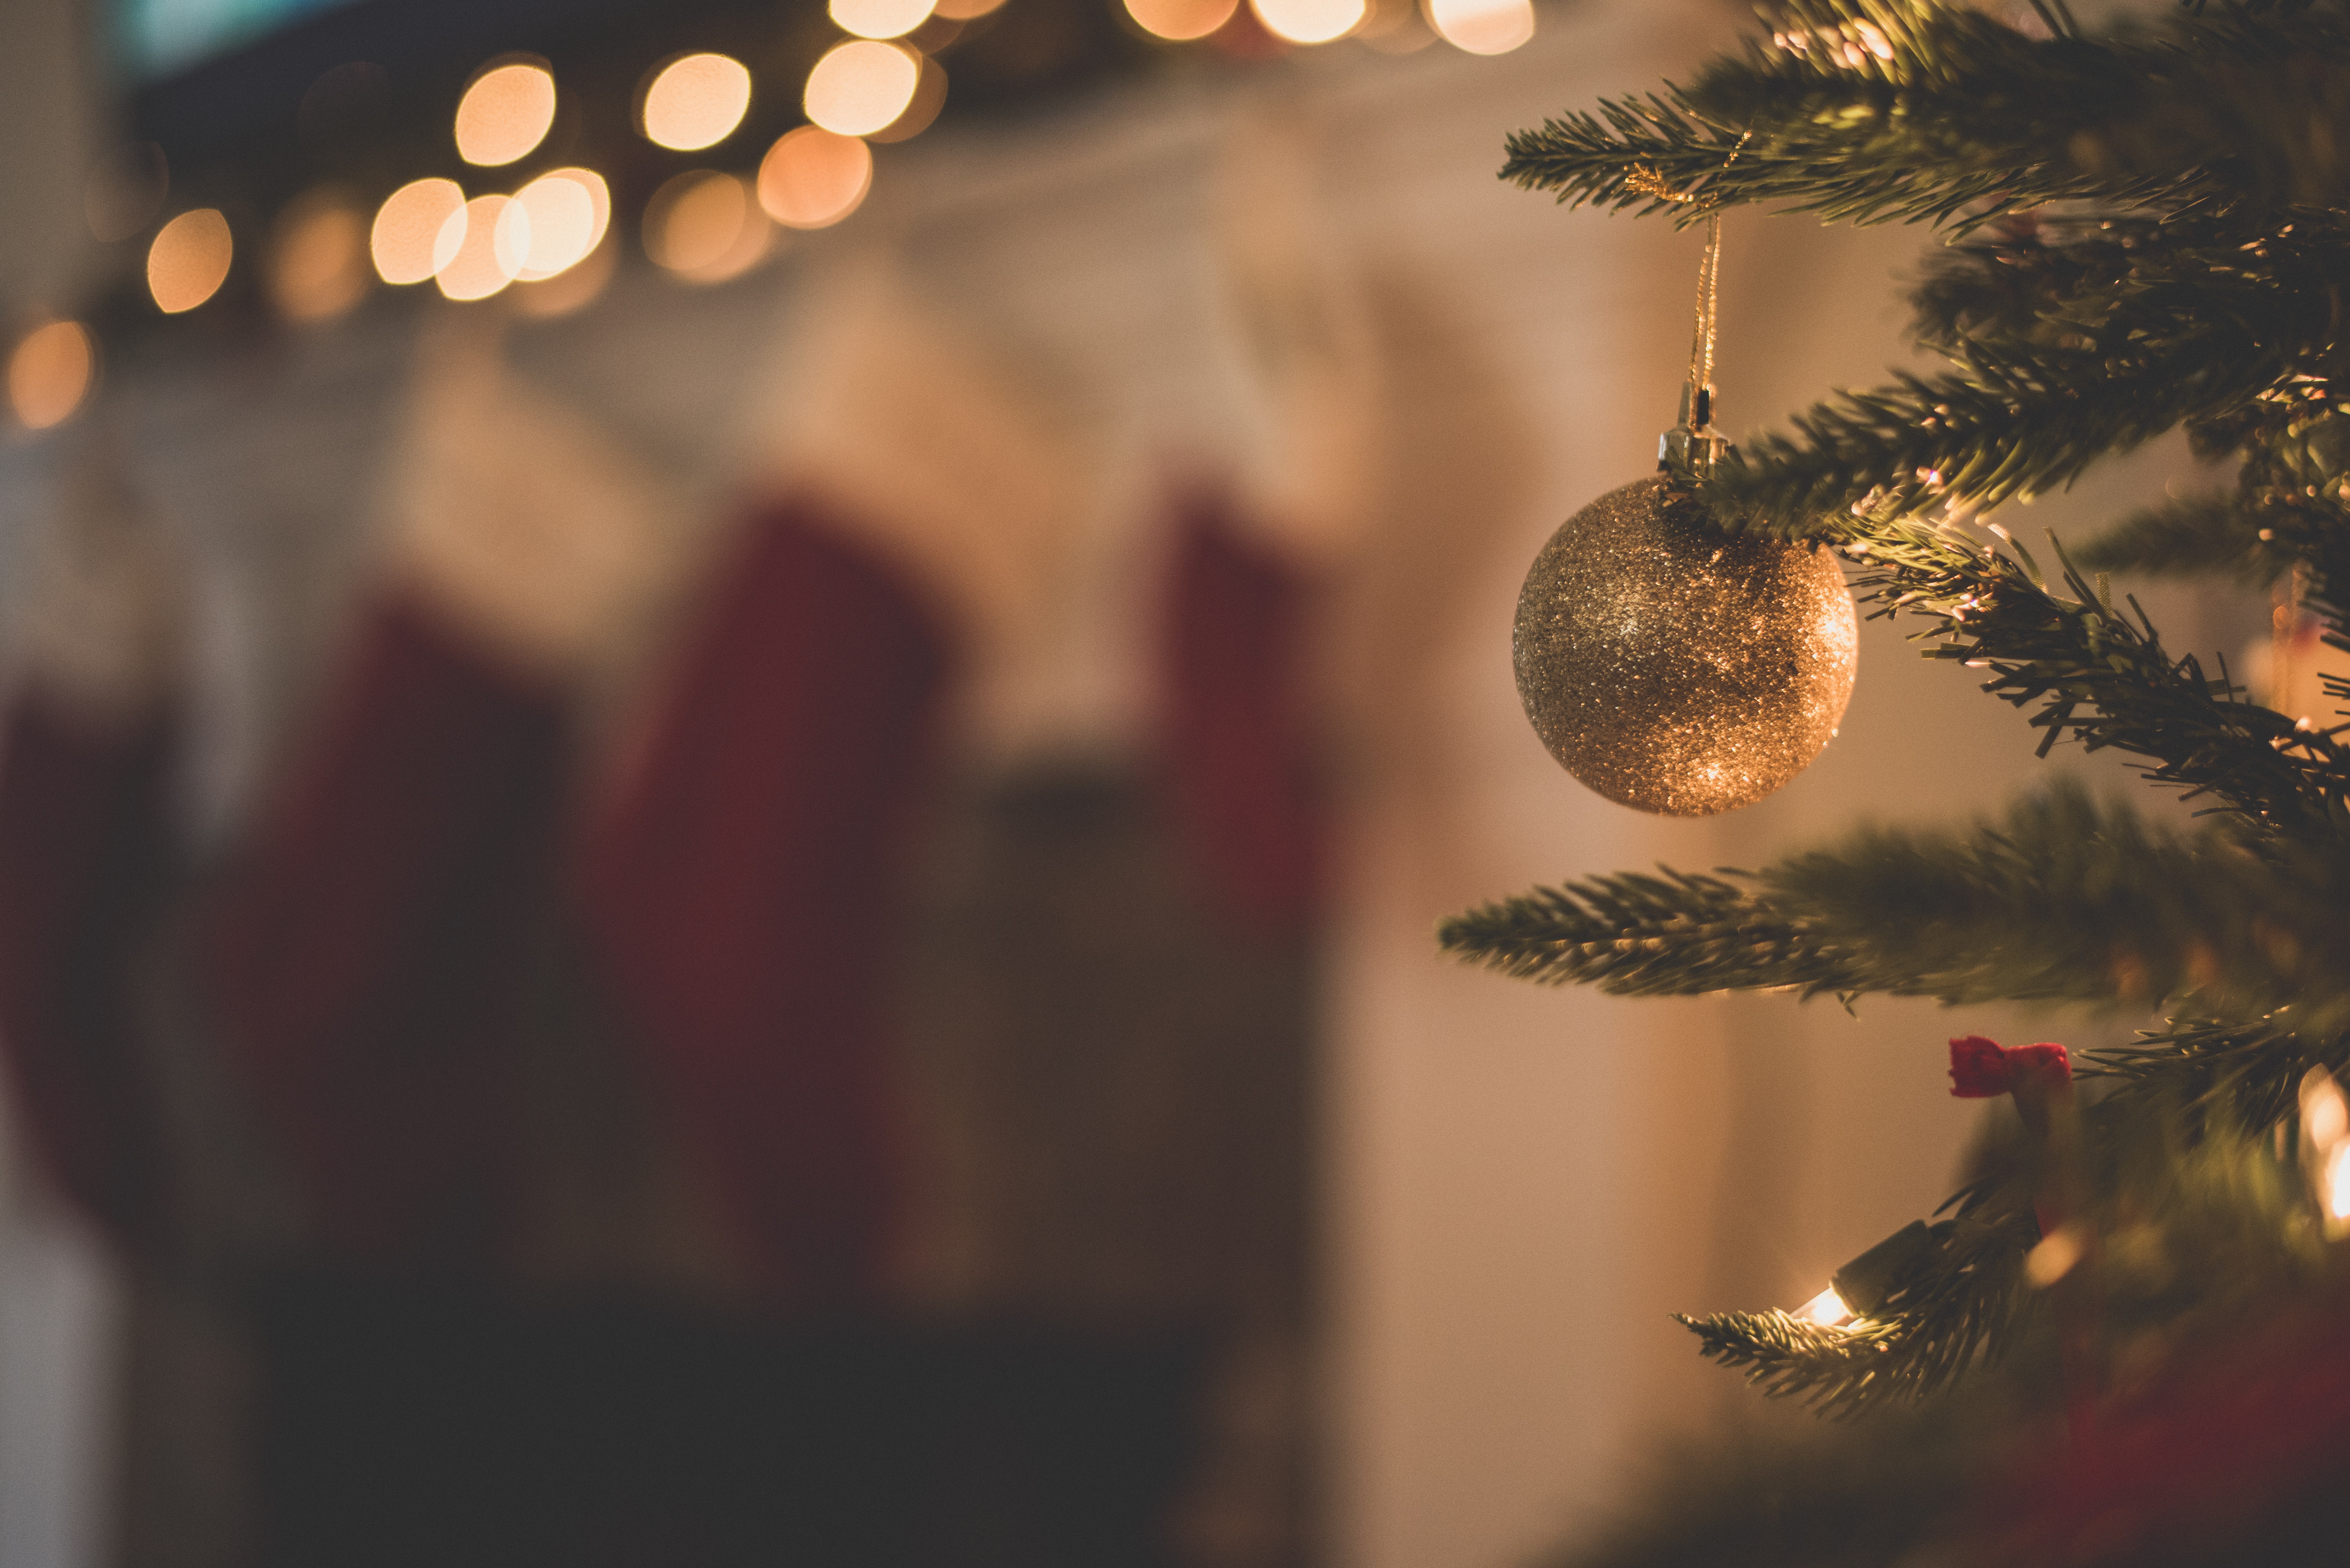 Při vybírání vánočních dekorací byste měli postupovat systematicky a neupozaďovat vlastní styl